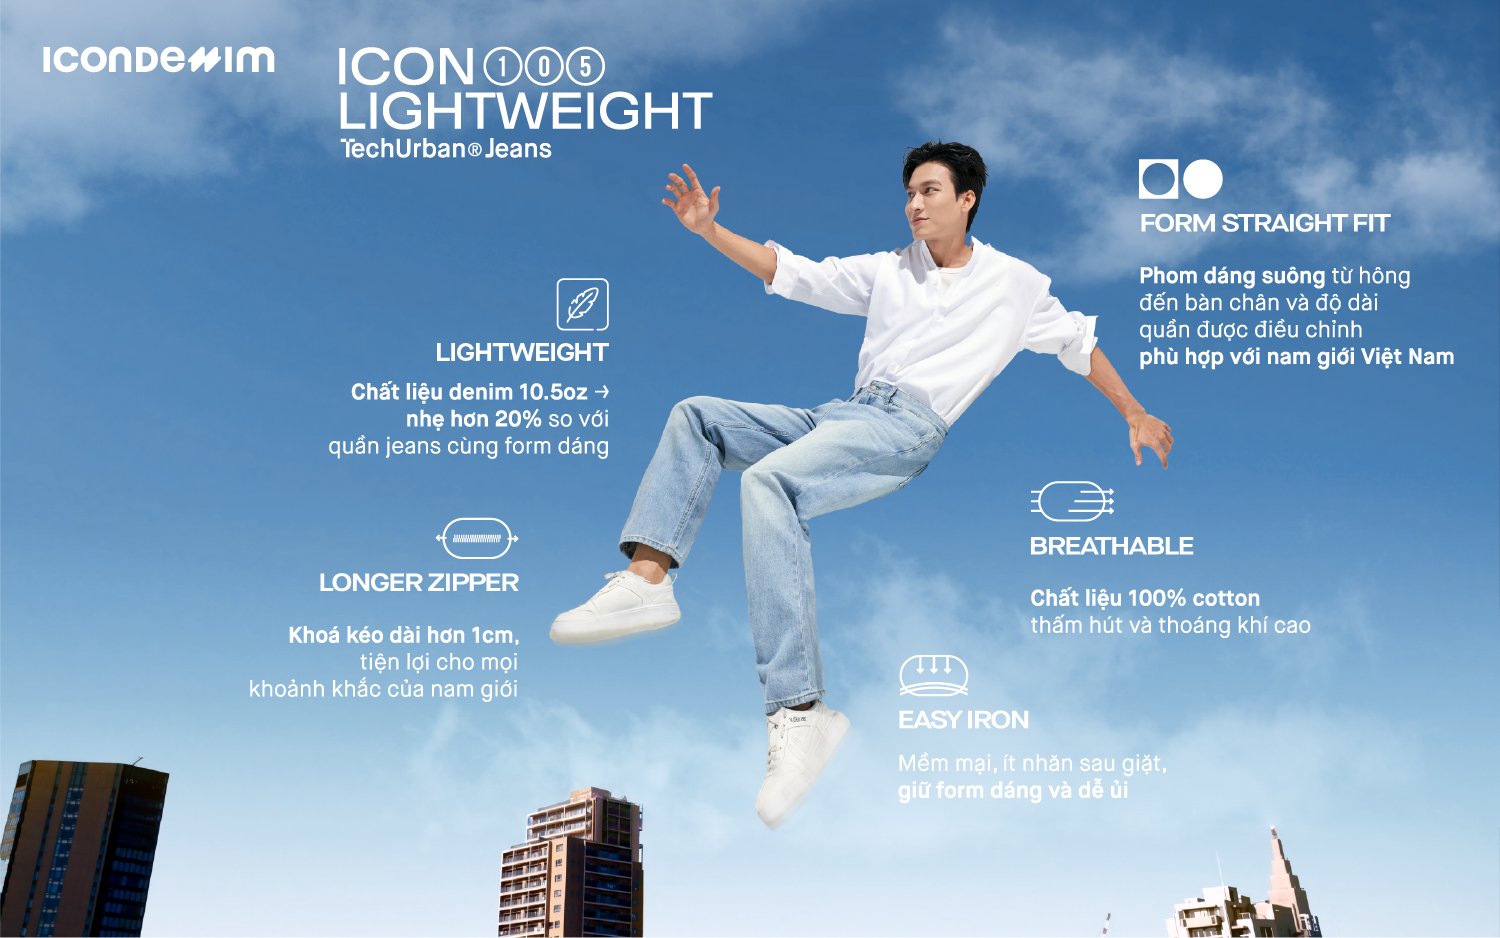 ICONDENIM tiếp tục mở rộng &quot;hệ sinh thái&quot; khi ra mắt dòng jeans ICON105 Lightweight - Ảnh 2.